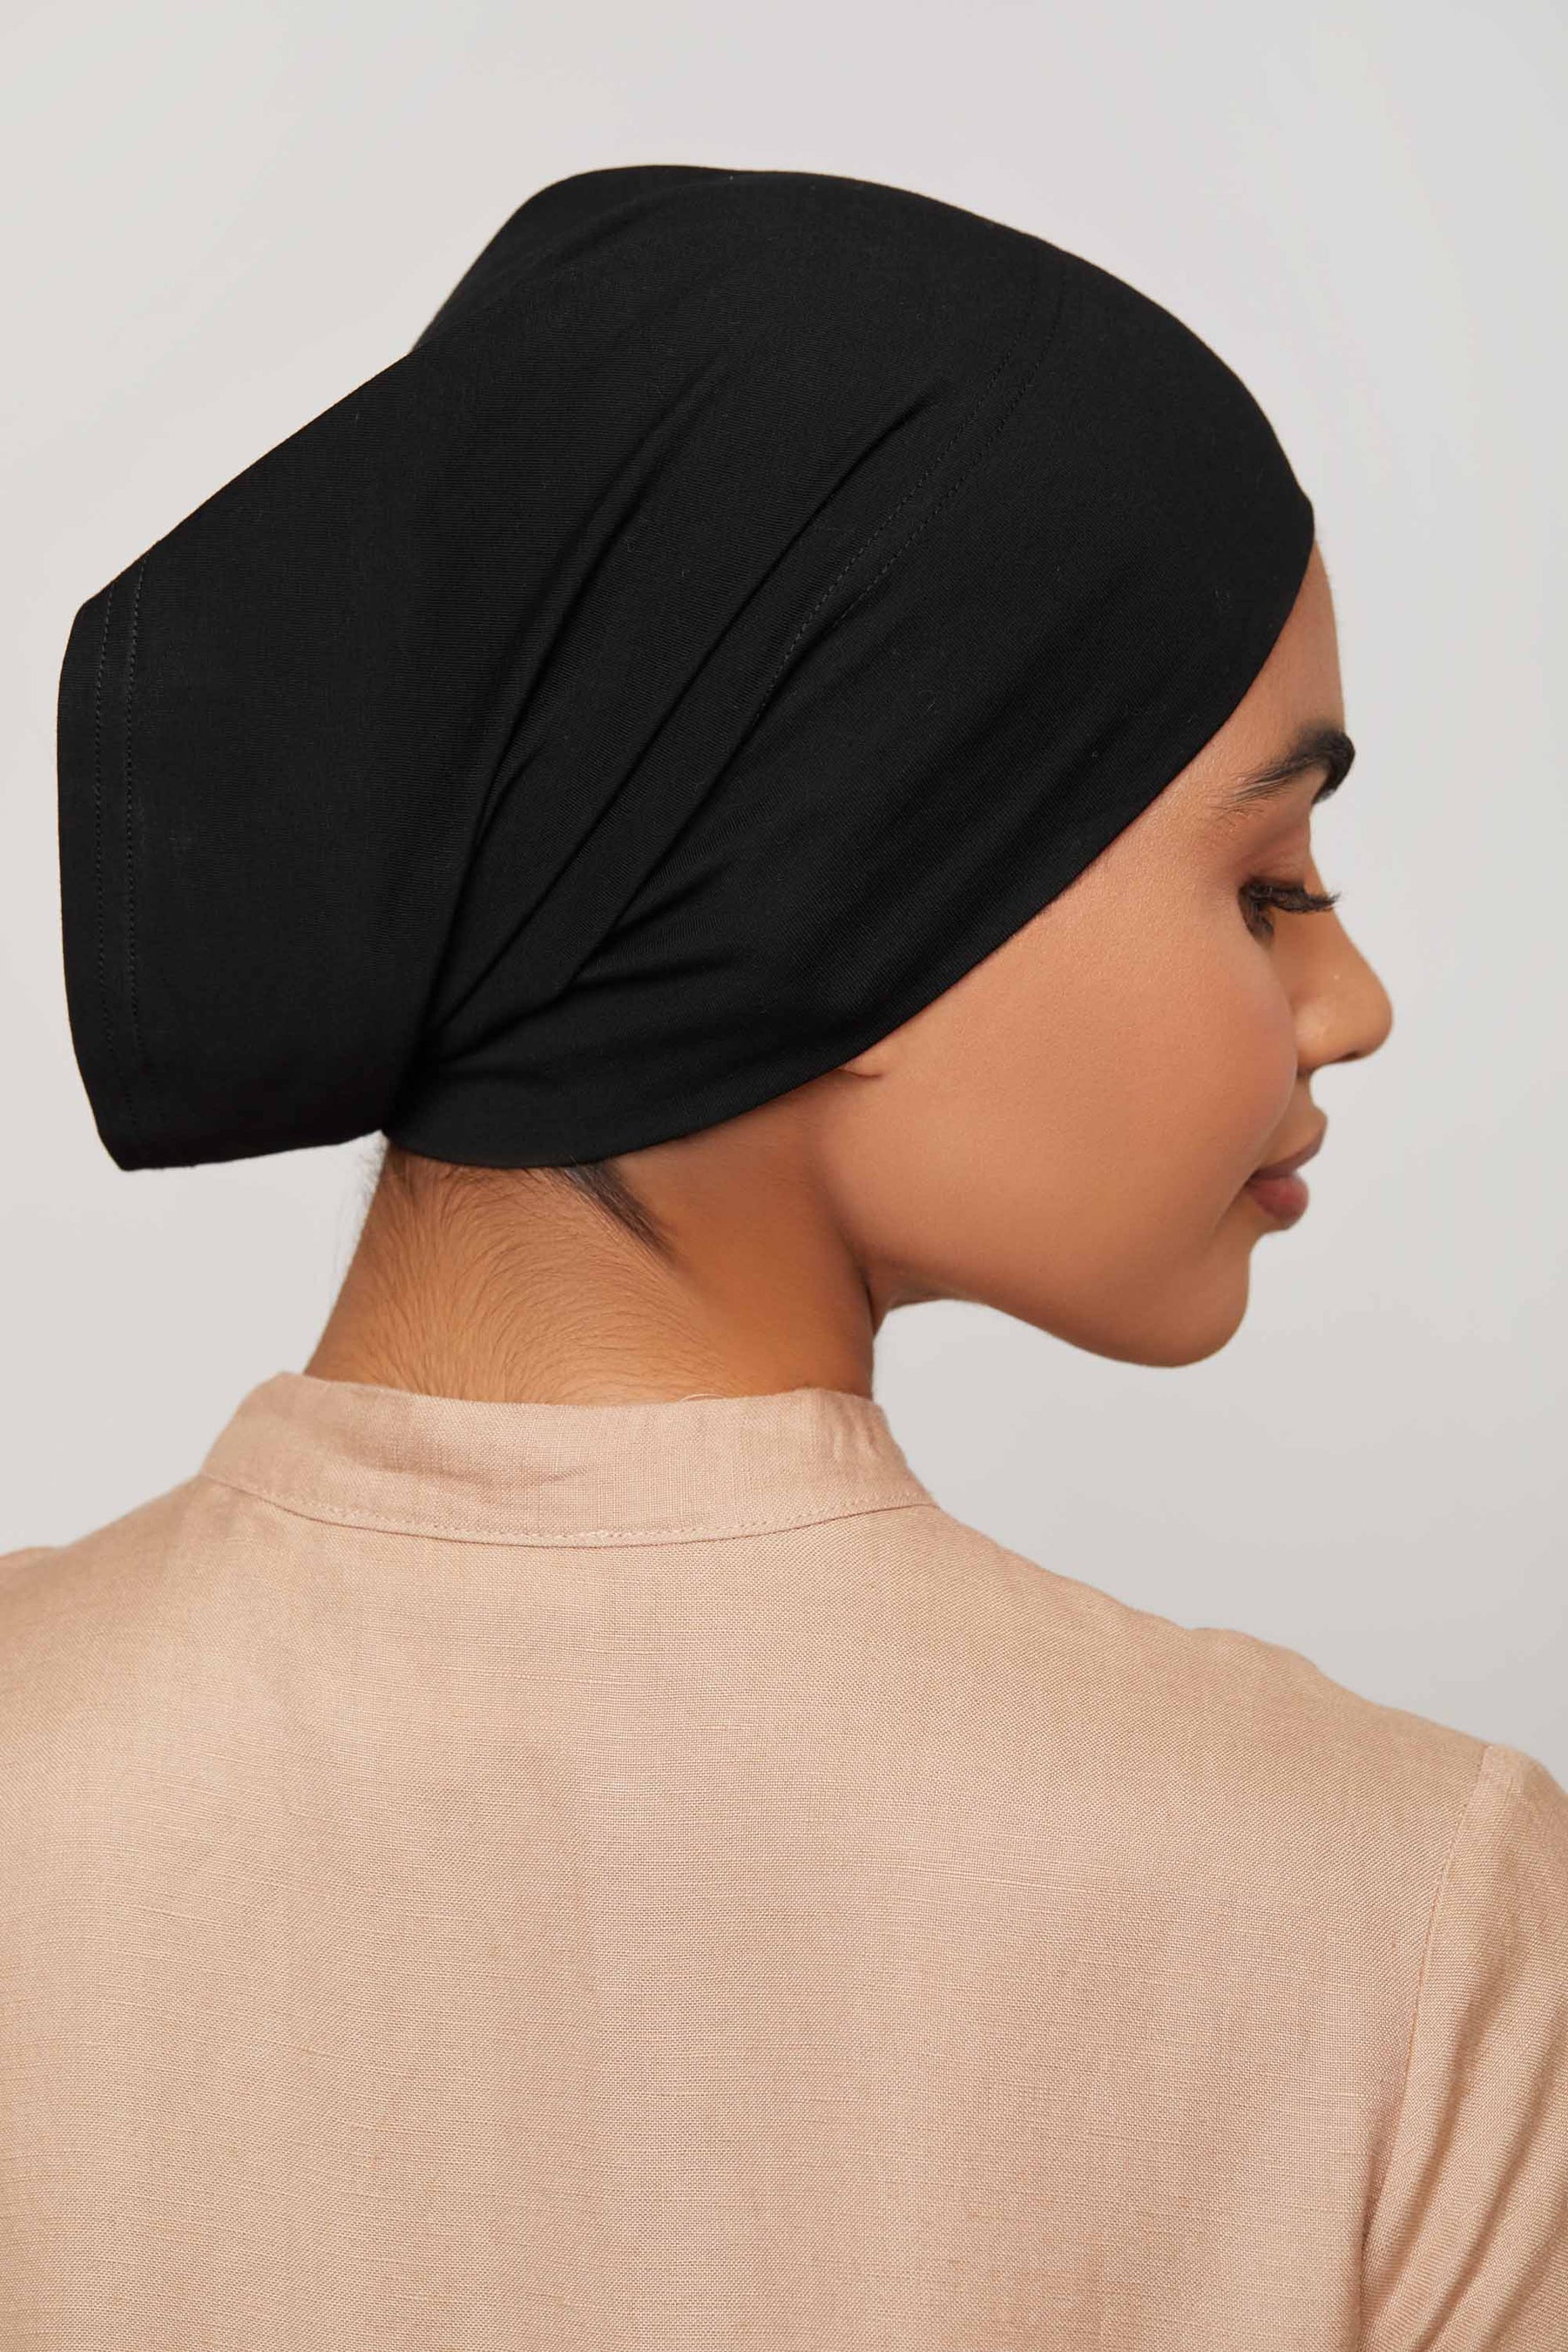 Black Undercap hijab cap